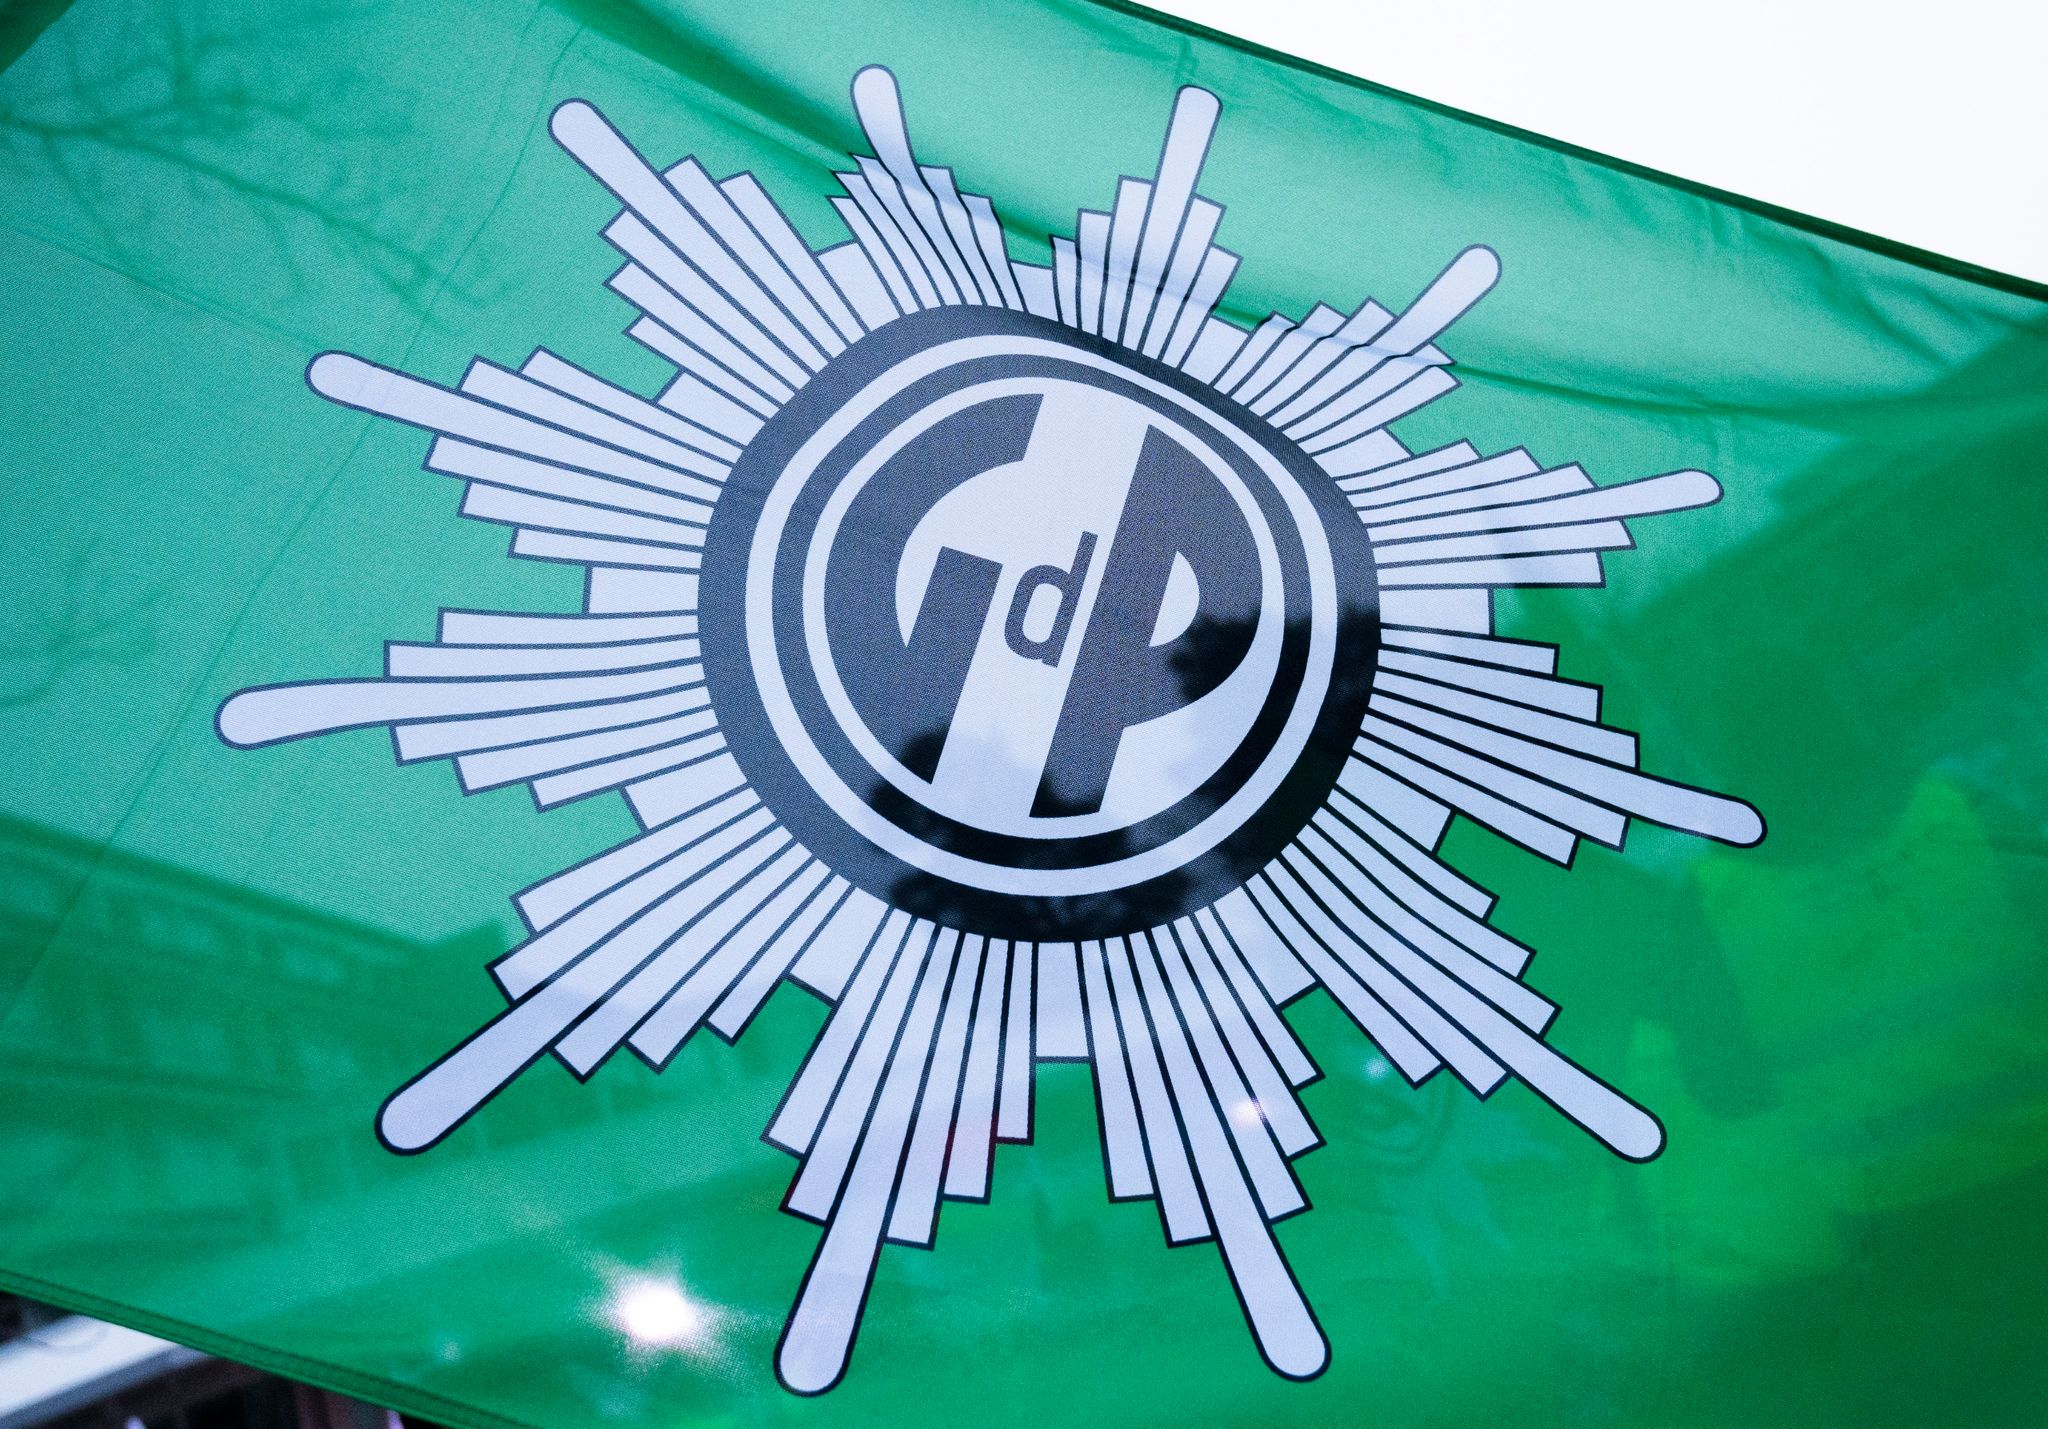 Eine Flagge mit dem Logo der Gewerkschaft der Polizei (GdP).